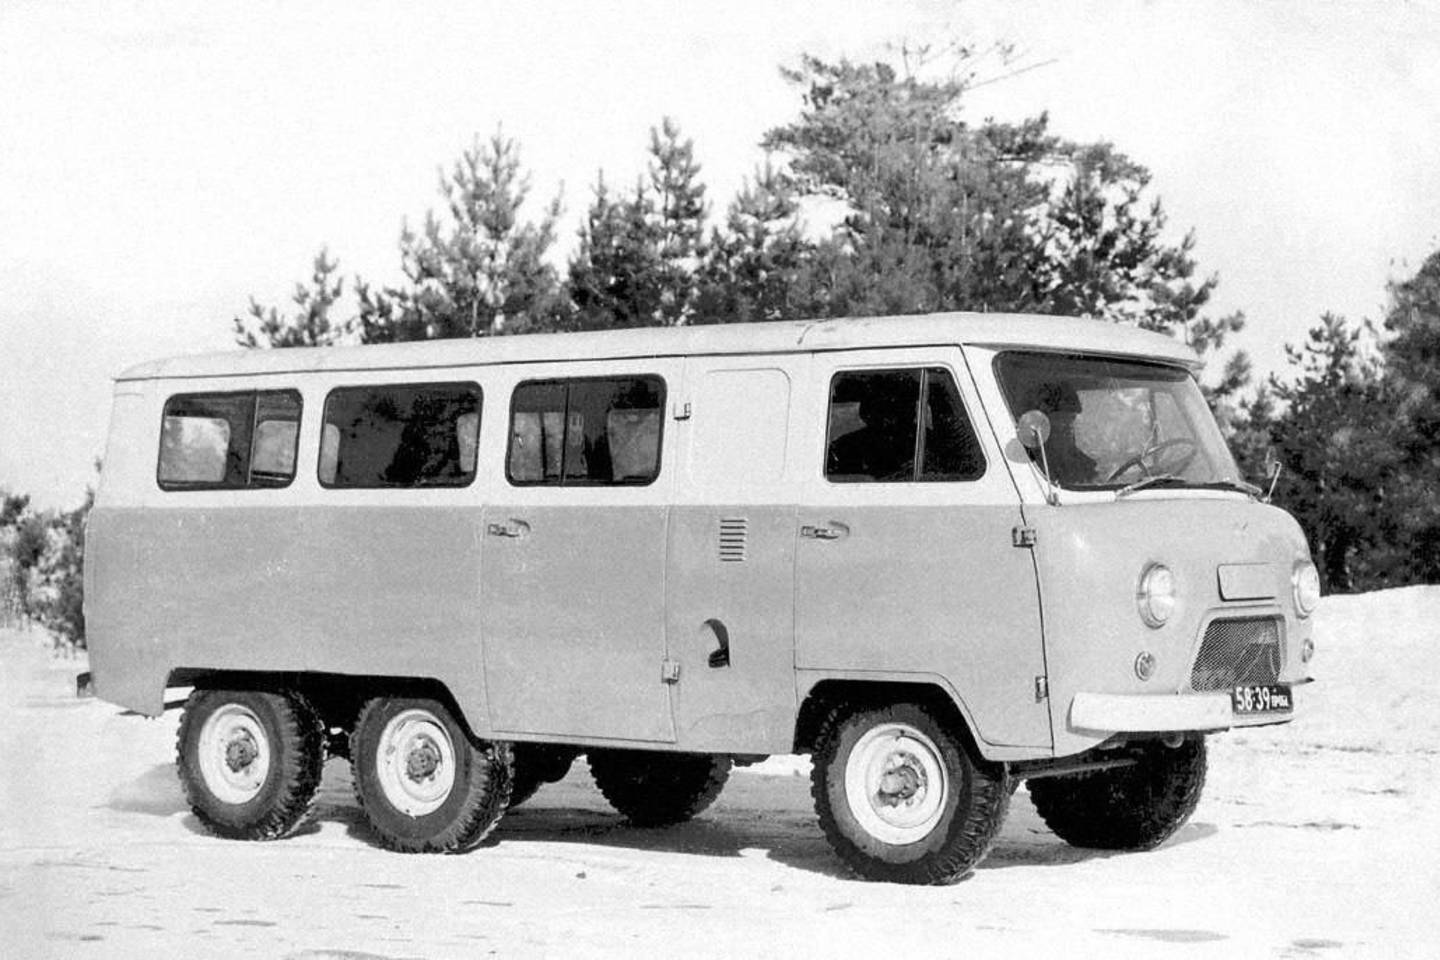 UAZ taip ir nepradėjo serijinės trijų ašių mikroautobuso gamybos, tačiau pagal jo brėžinius gruzinai paruošė unikalų automobilį medikams.<br>Gamintojo nuotr.